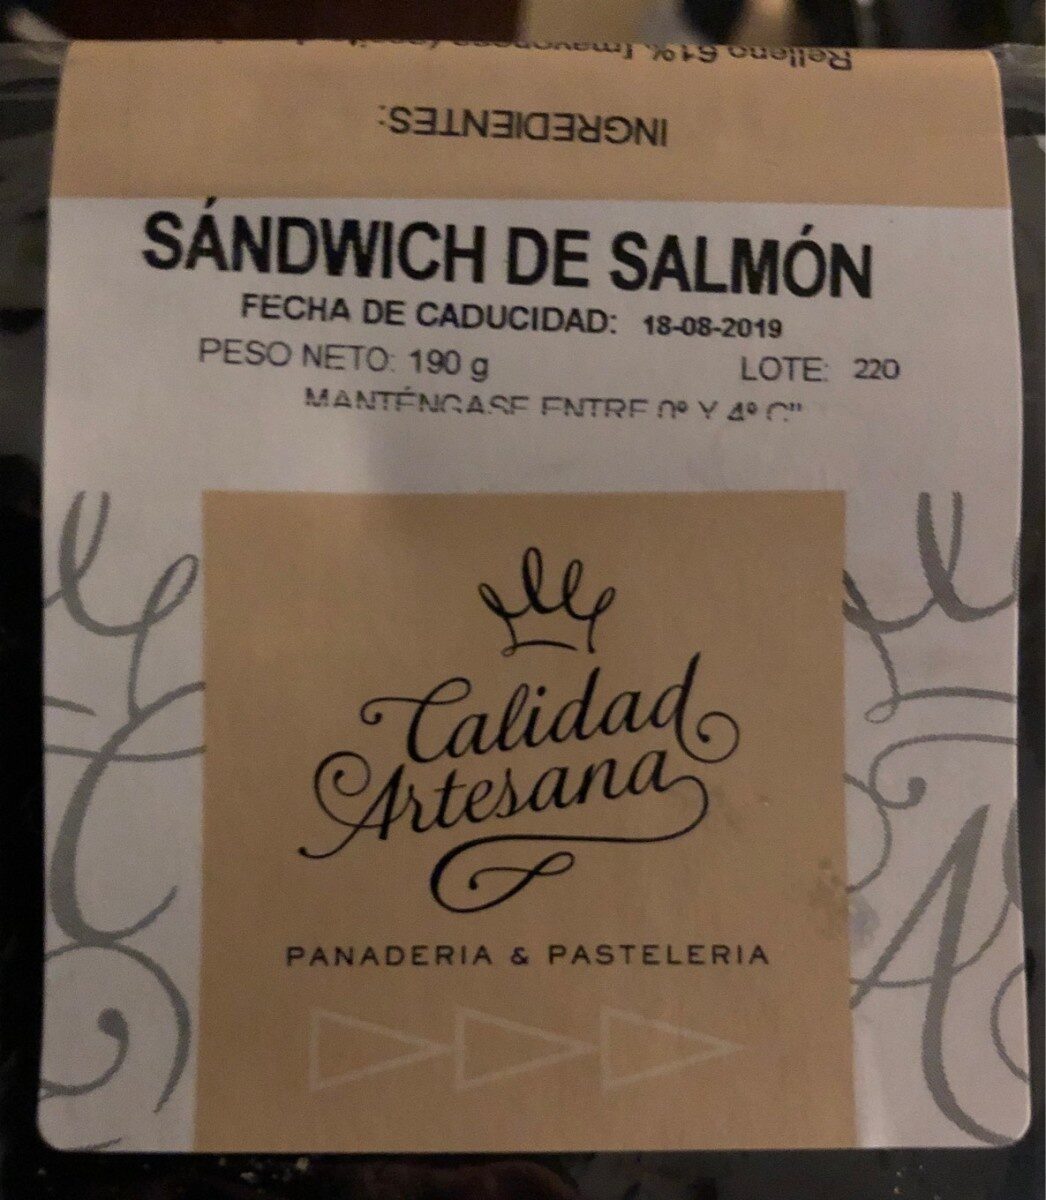 Sandwich de Salmón - Product - es